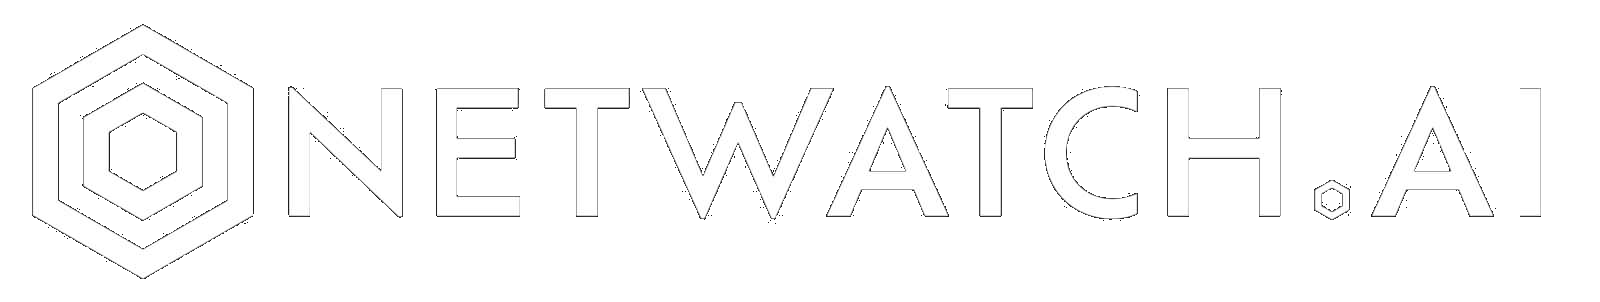 Netwatch white full logo